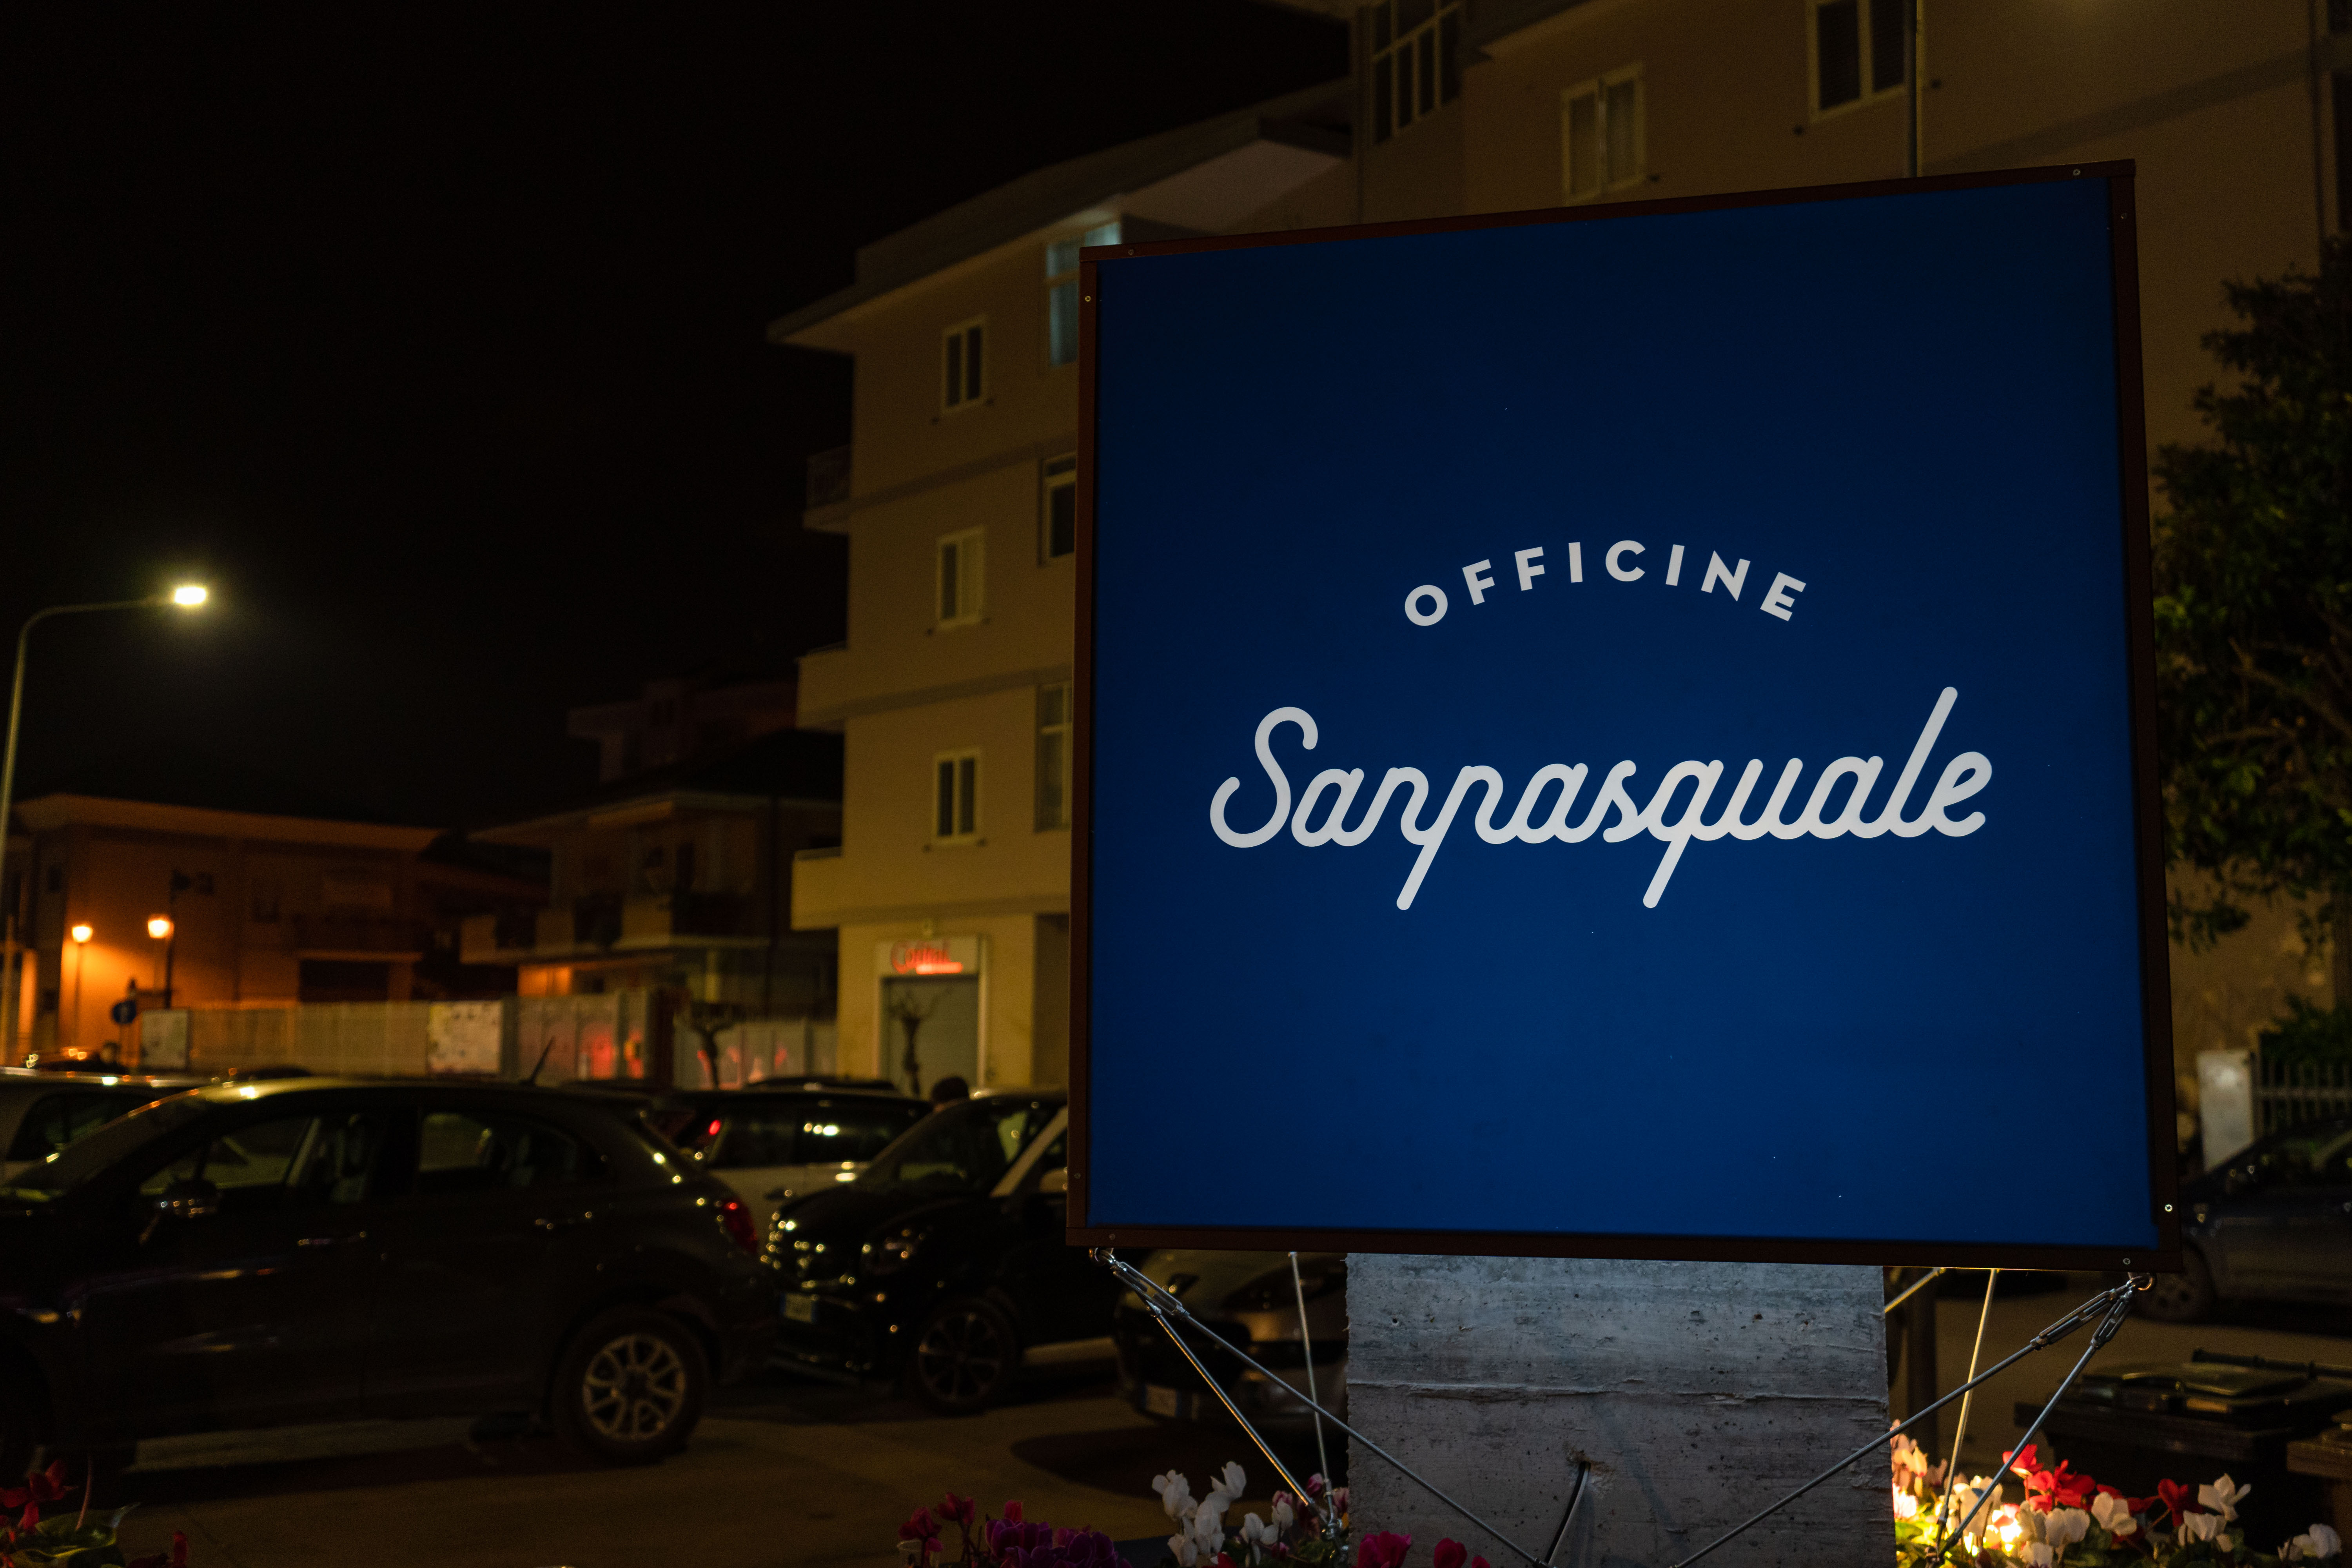 Officine Sanpasquale e Salotto Sanpasquale sbarca ad Aversa: un progetto che fonde aggregazione, gusto e divertimento